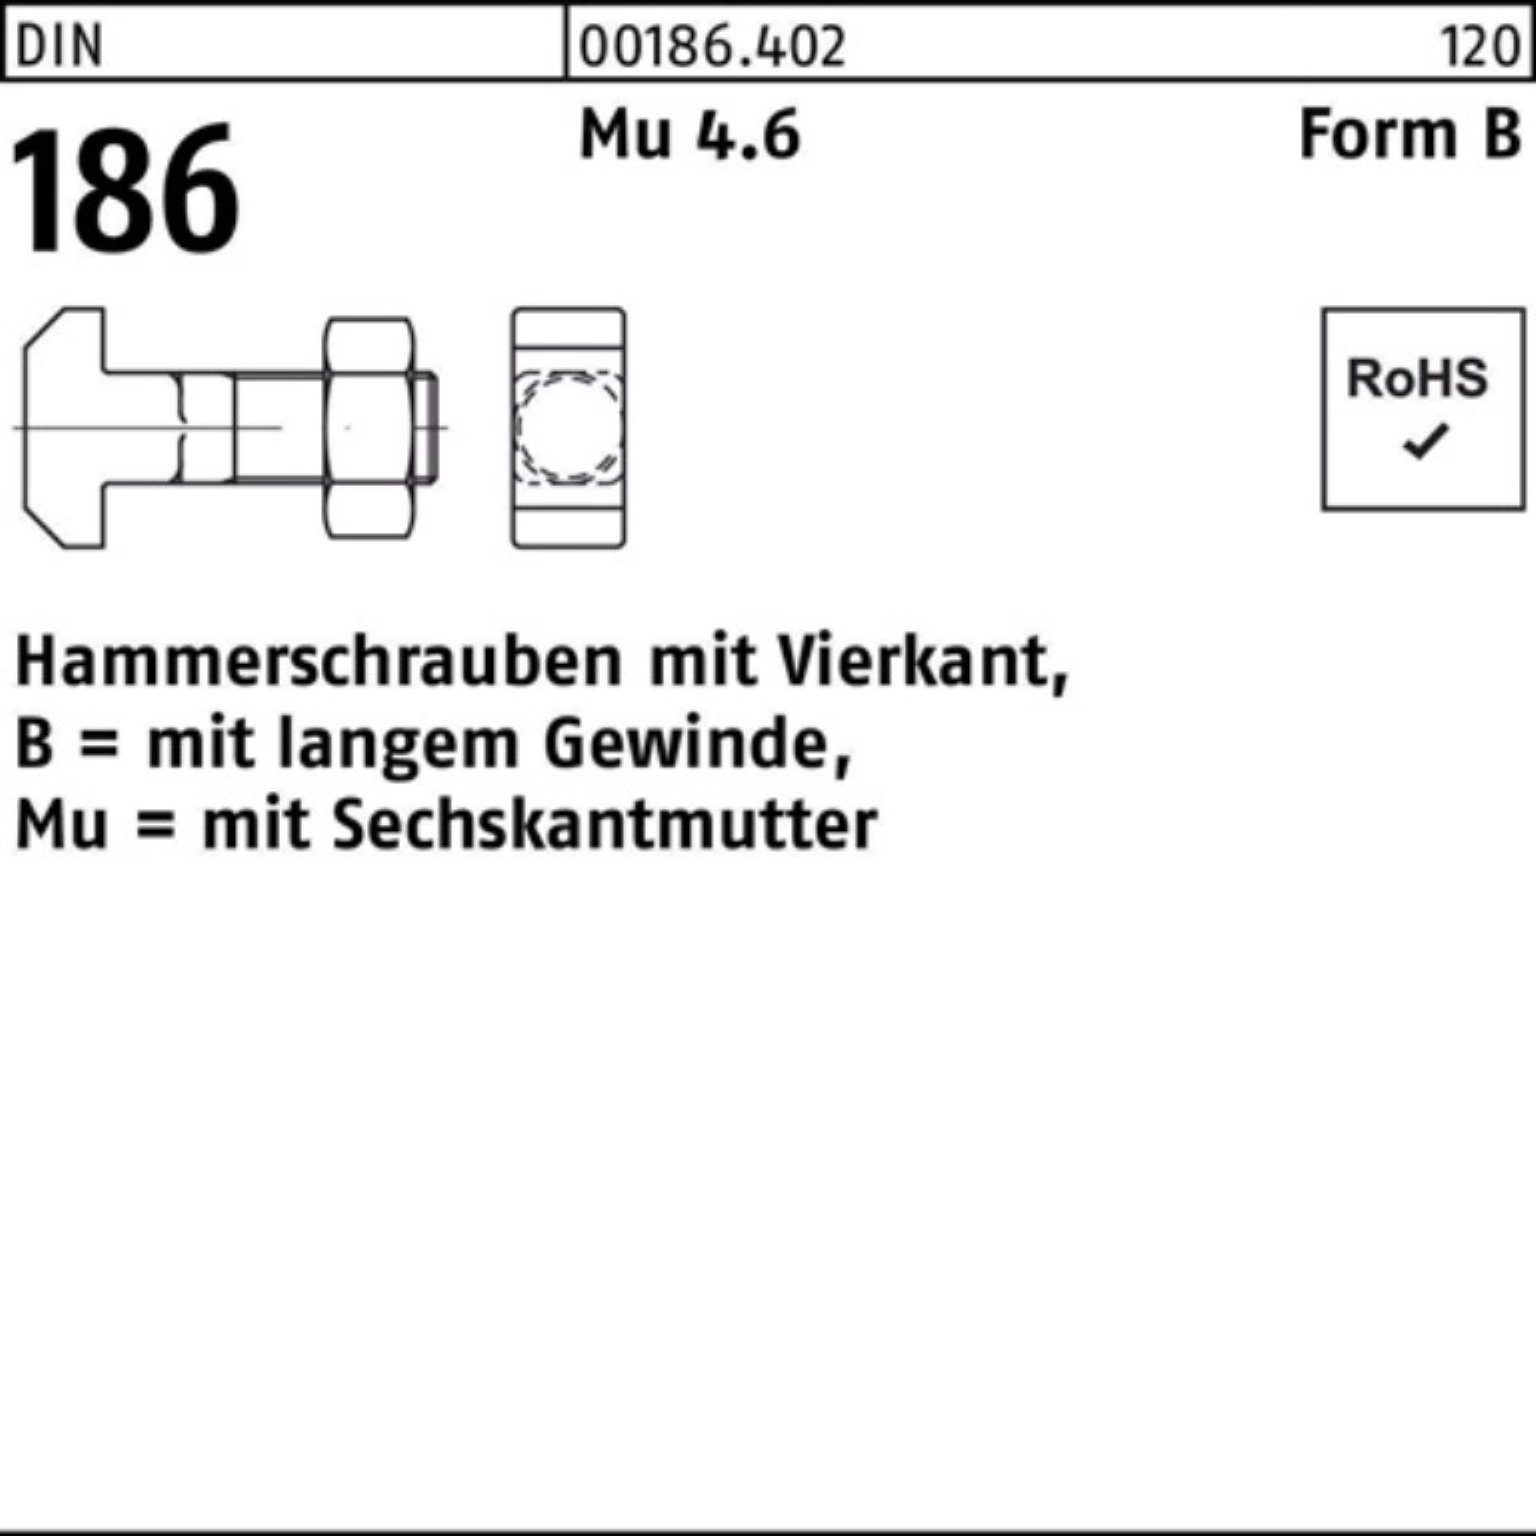 Reyher Schraube 100er FormB 24x 200 Hammerschraube BM 186 Vierkant 6-ktmutter DIN Pack